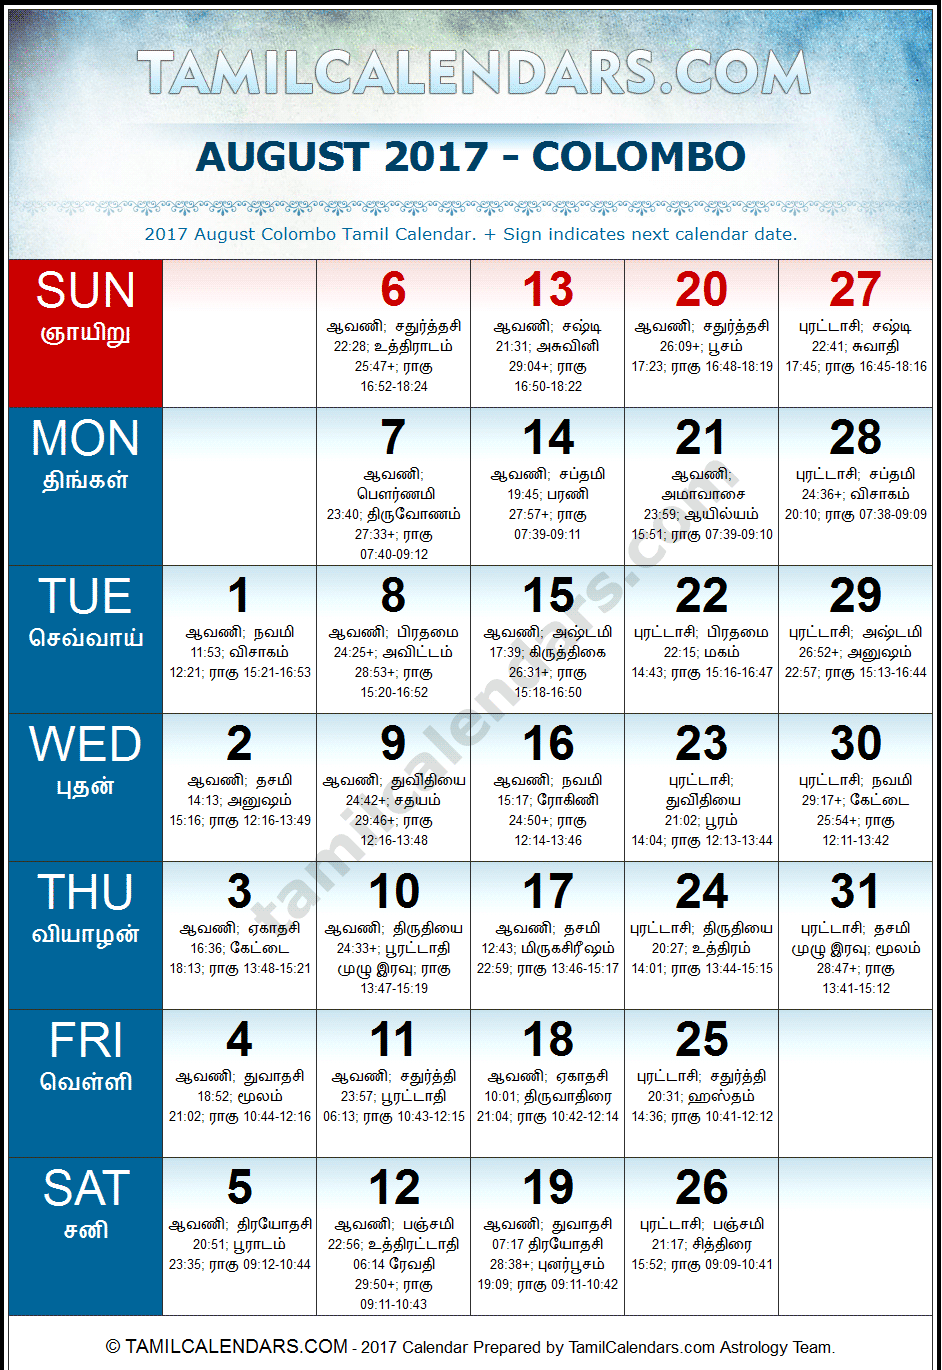 August 2017 Tamil Calendar for Sri Lanka (Colombo)